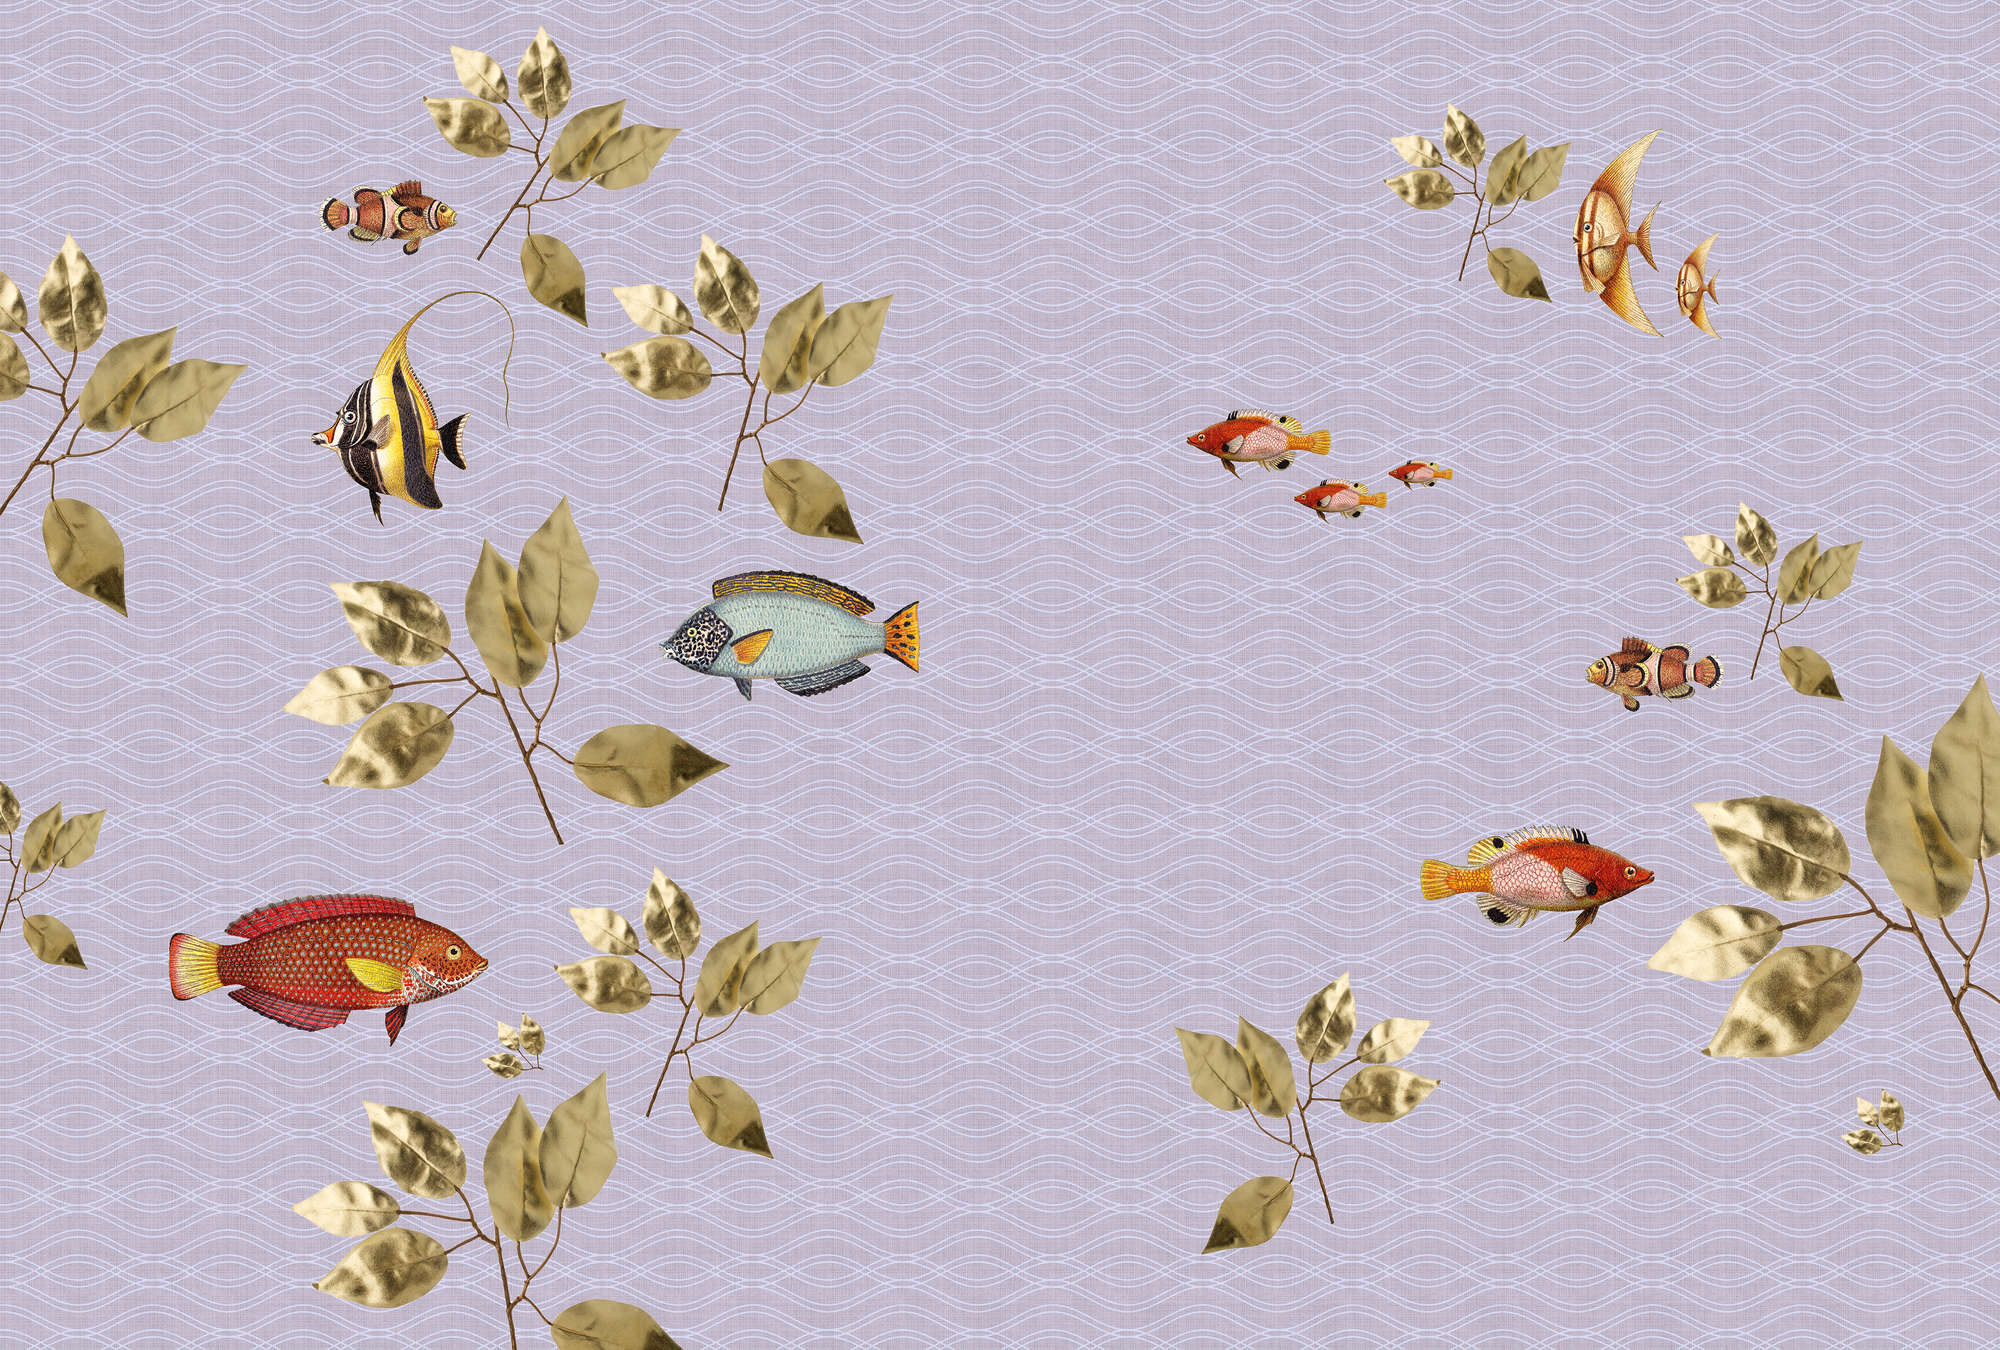             Briljante vis 2 - Visbehang in natuurlijke linnenstructuur met moderne stijlmix - Violet | Strukturenvlies
        